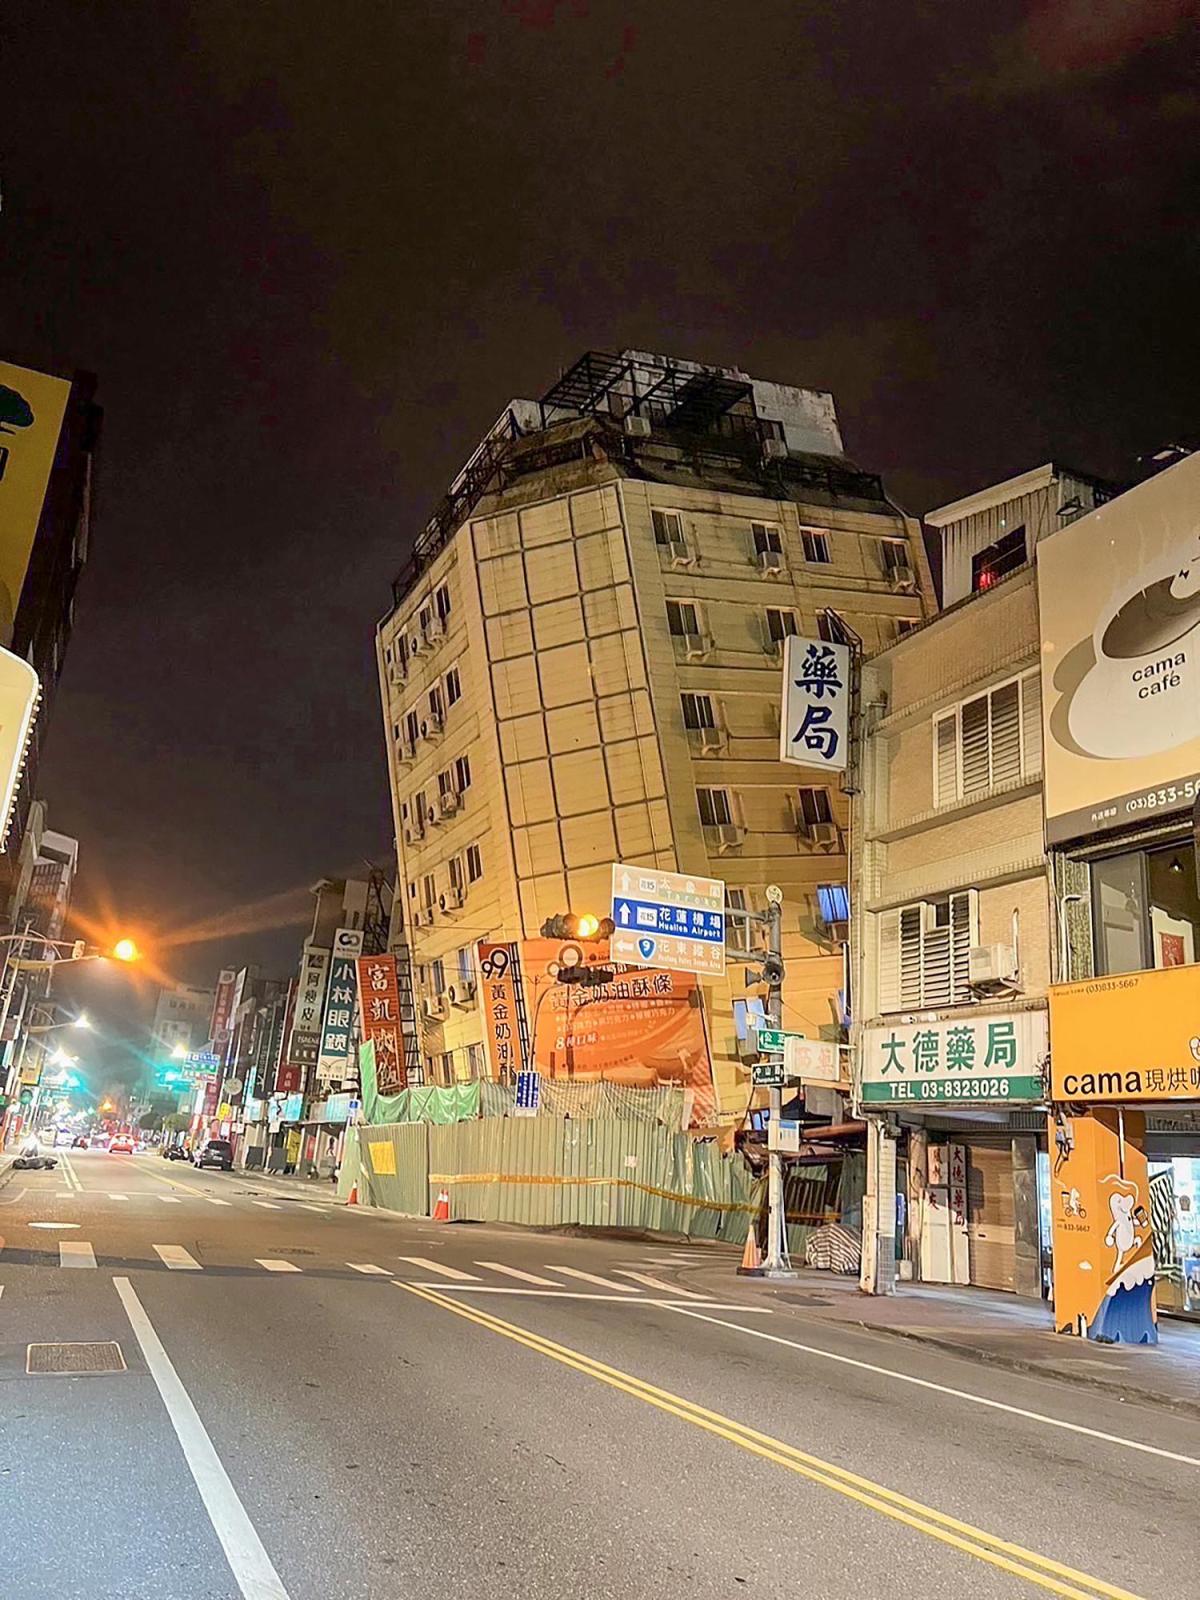 Tremblement de terre à Hualien à Taiwan | L’Administration météorologique affirme que les répliques pourraient durer un an. Les experts s’inquiètent d’un tremblement de terre géant dans une tranchée